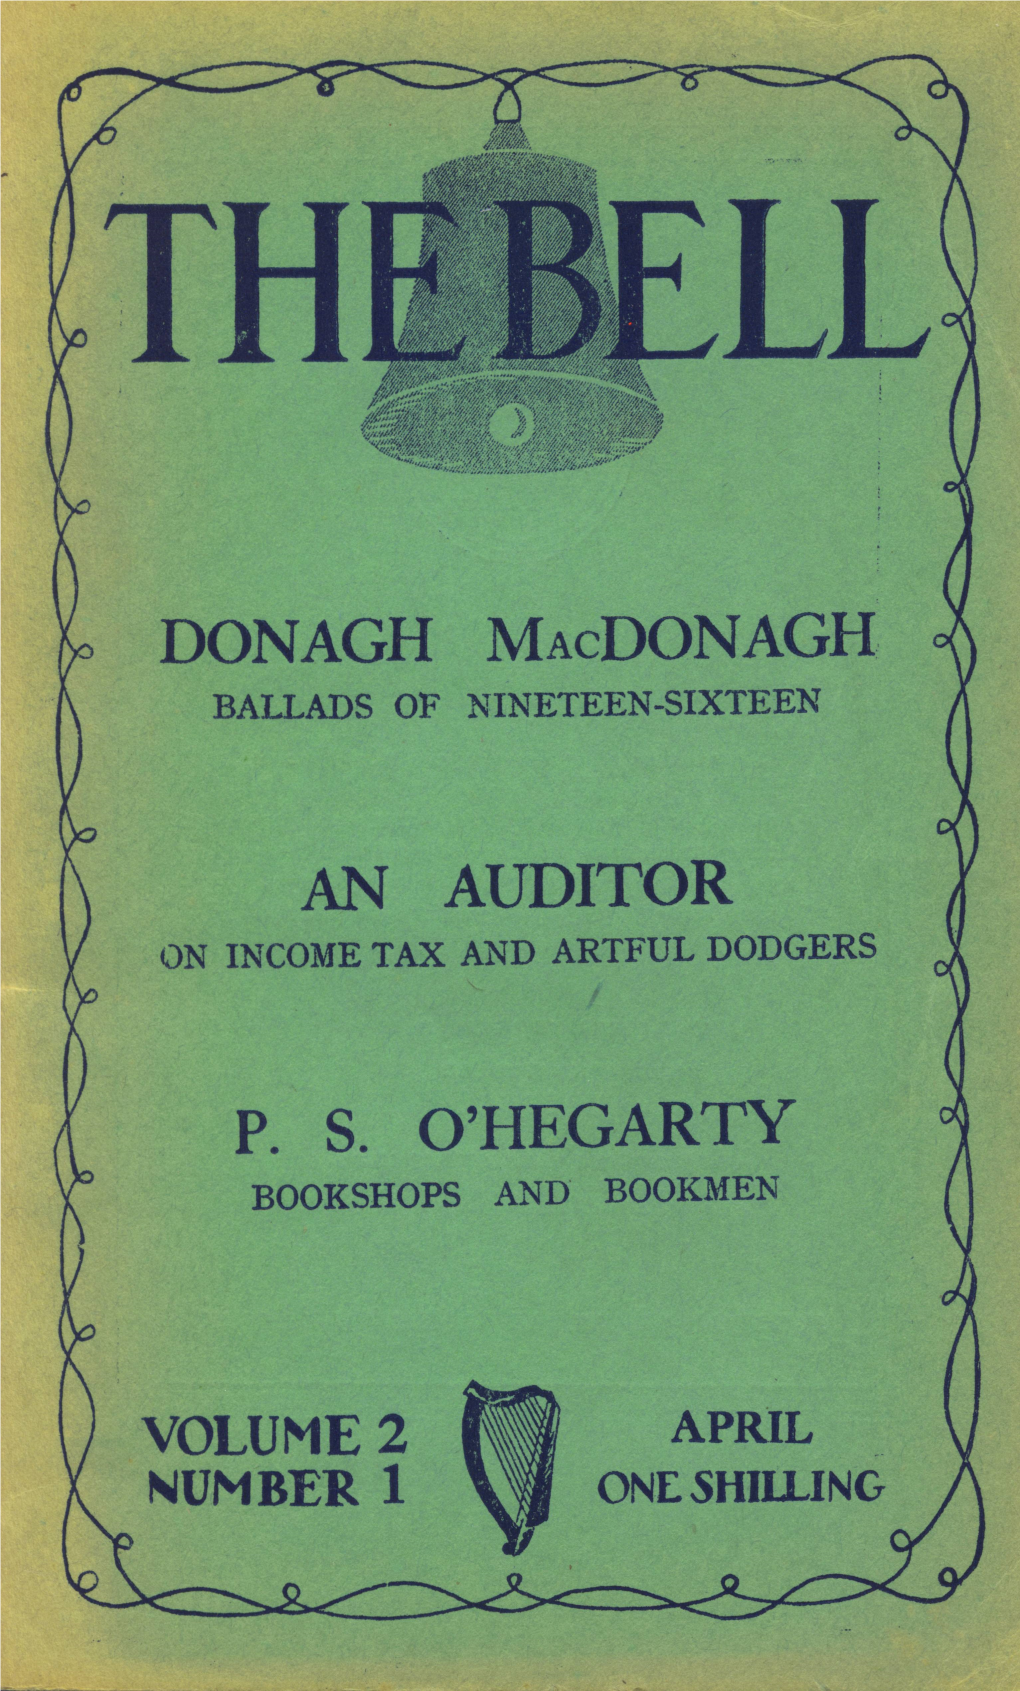 Donagh Macdonagh Ballads of Nineteen-Sixteen